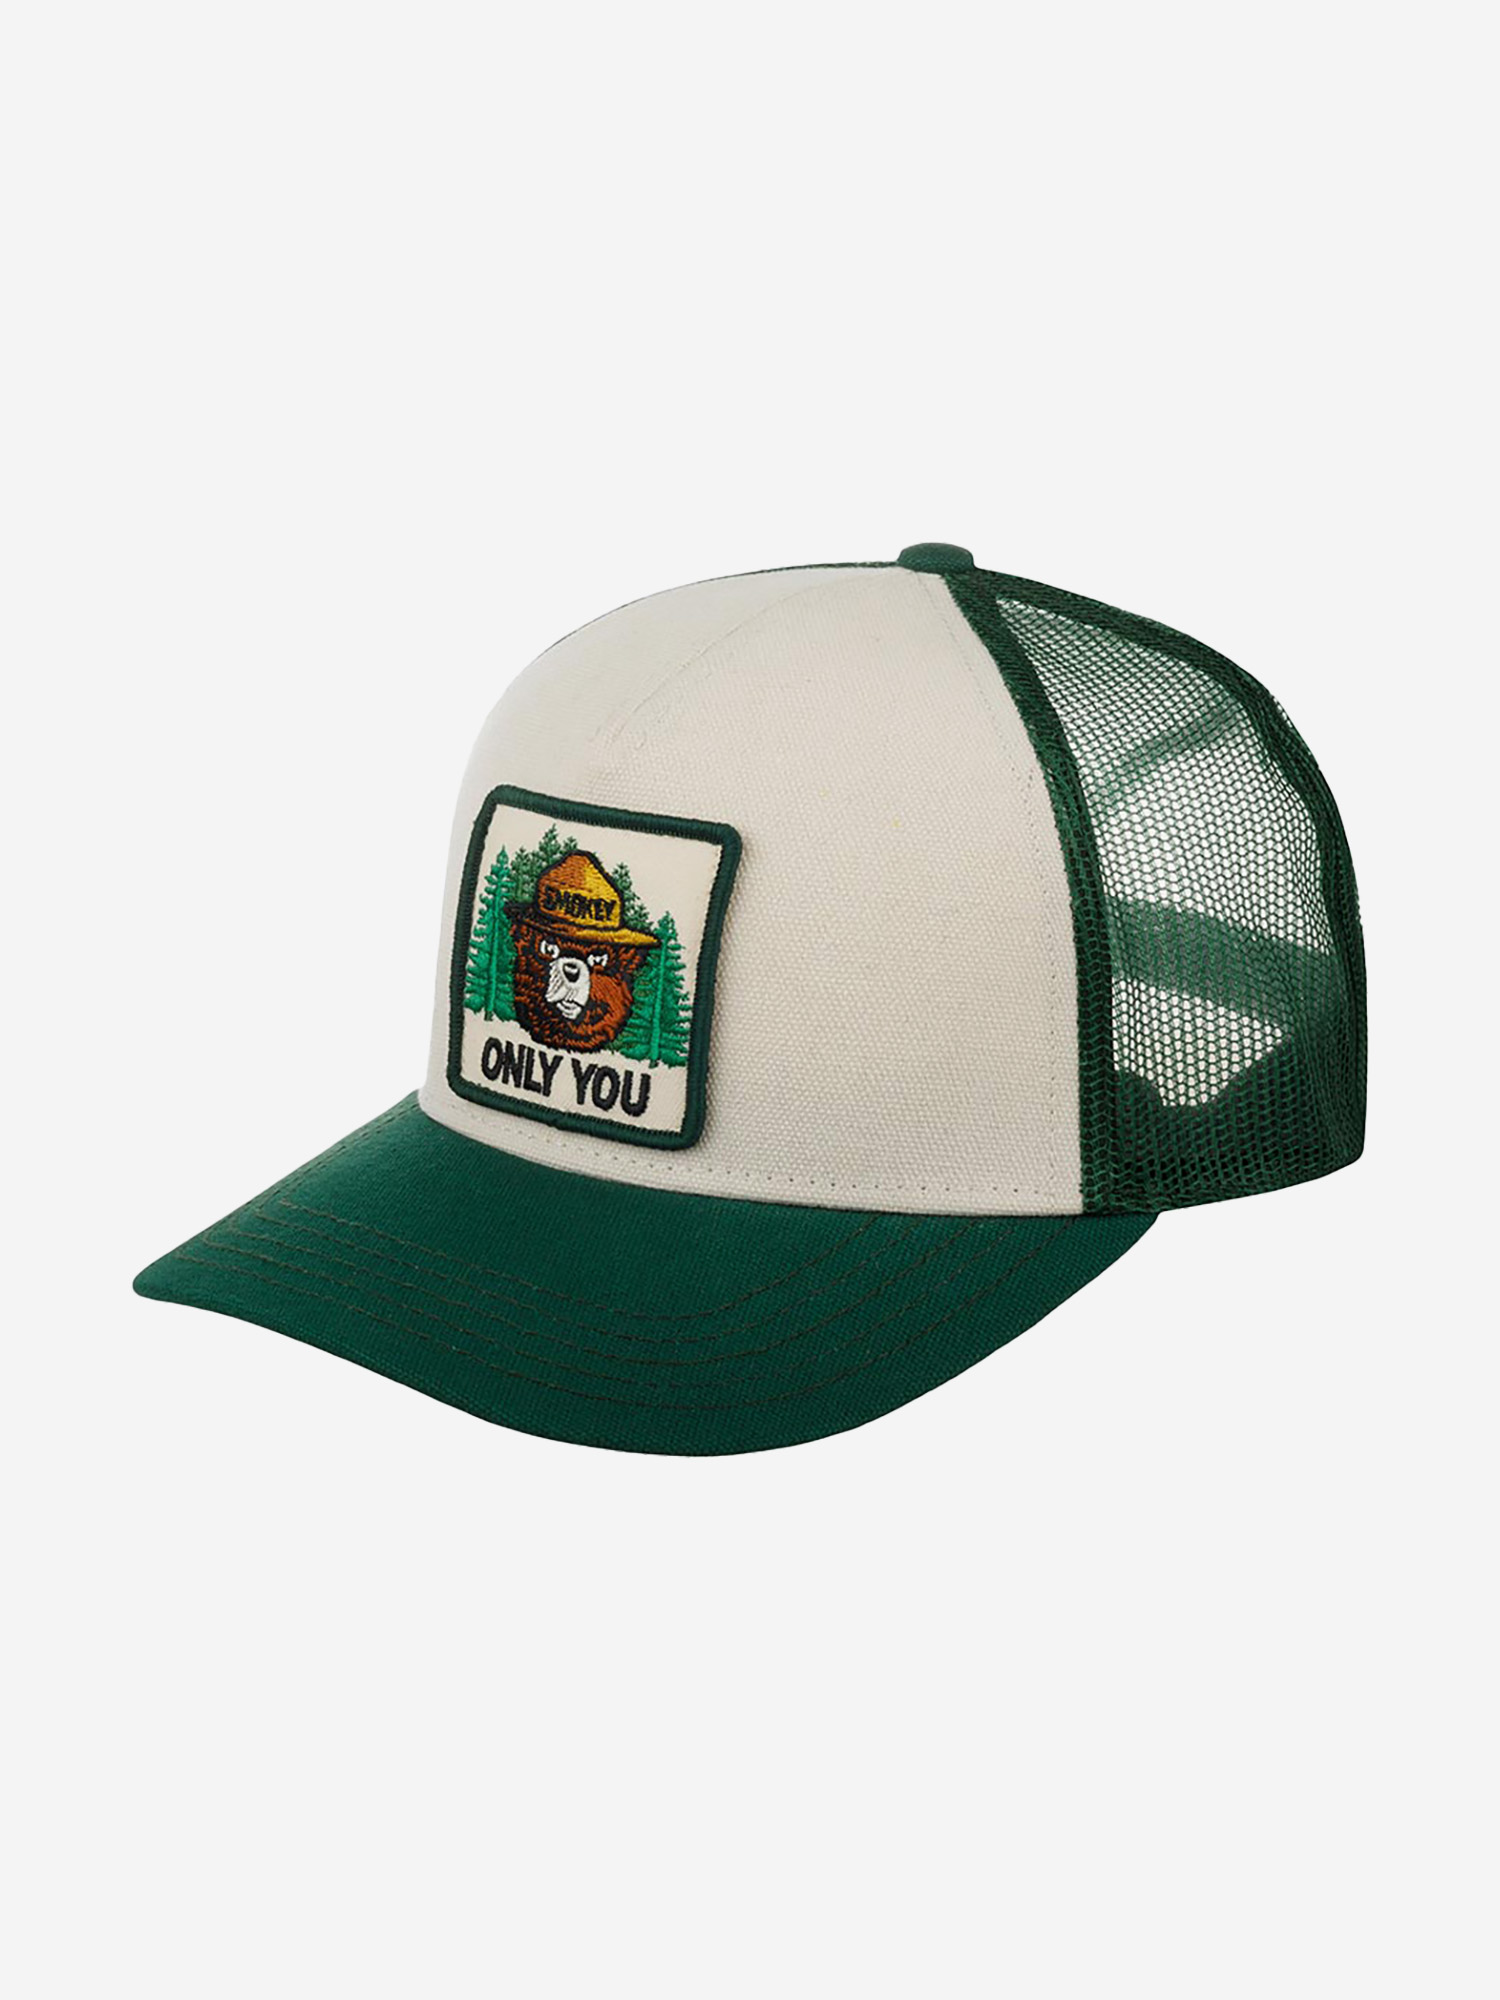 Бейсболка с сеточкой AMERICAN NEEDLE 42960A-SBEAR Smokey Bear Valin (зеленый), Зеленый